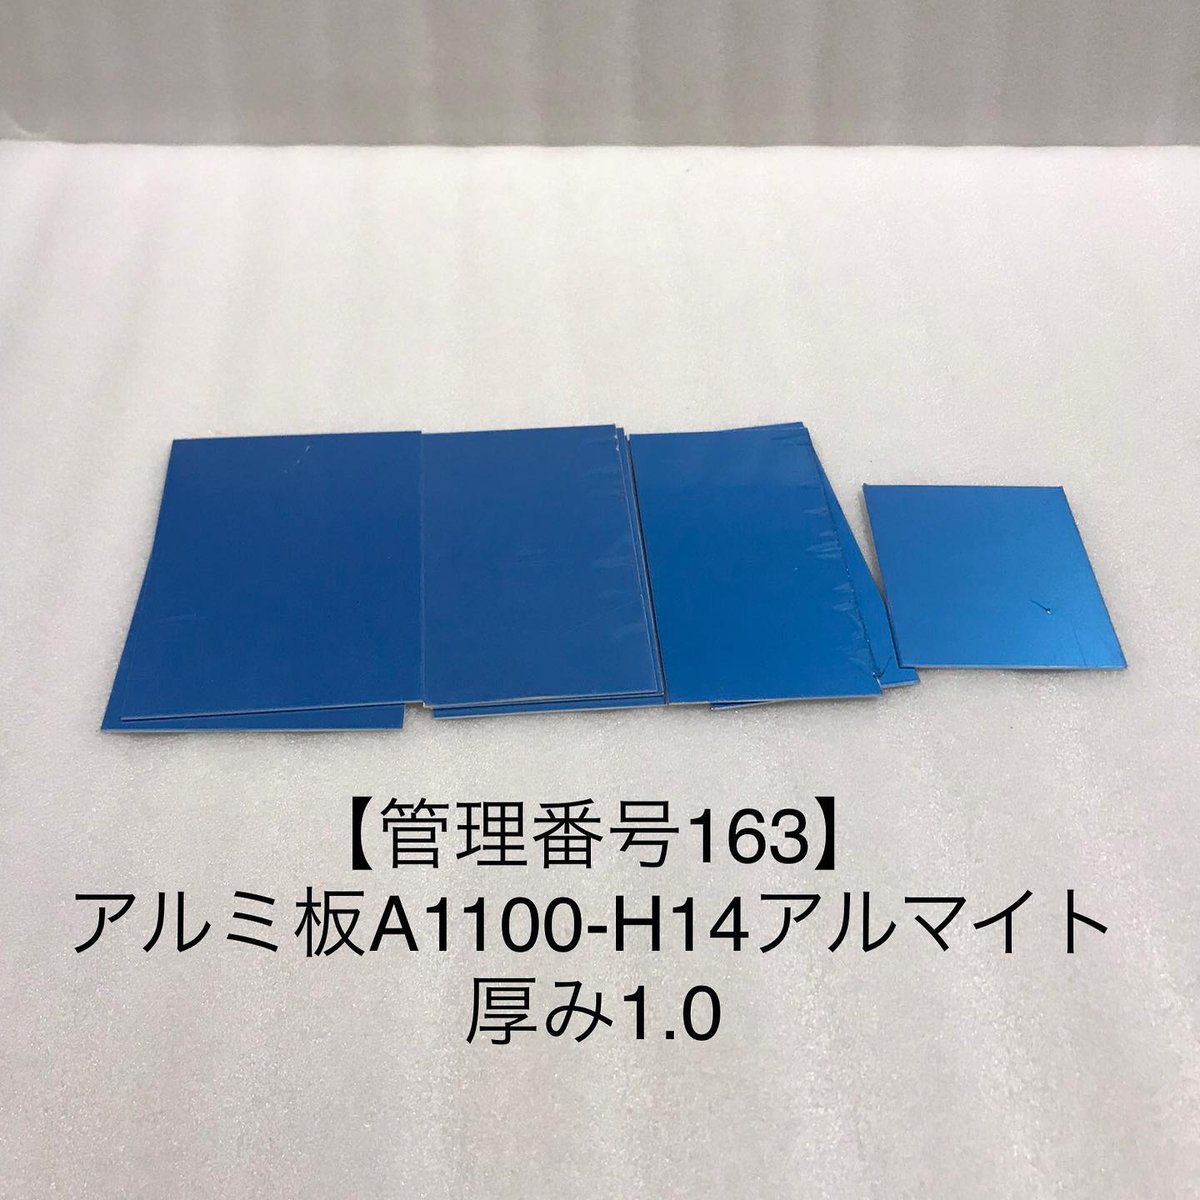 【管理番号163】アルミ板アルマイトA1100-H14 厚み1.0 数枚